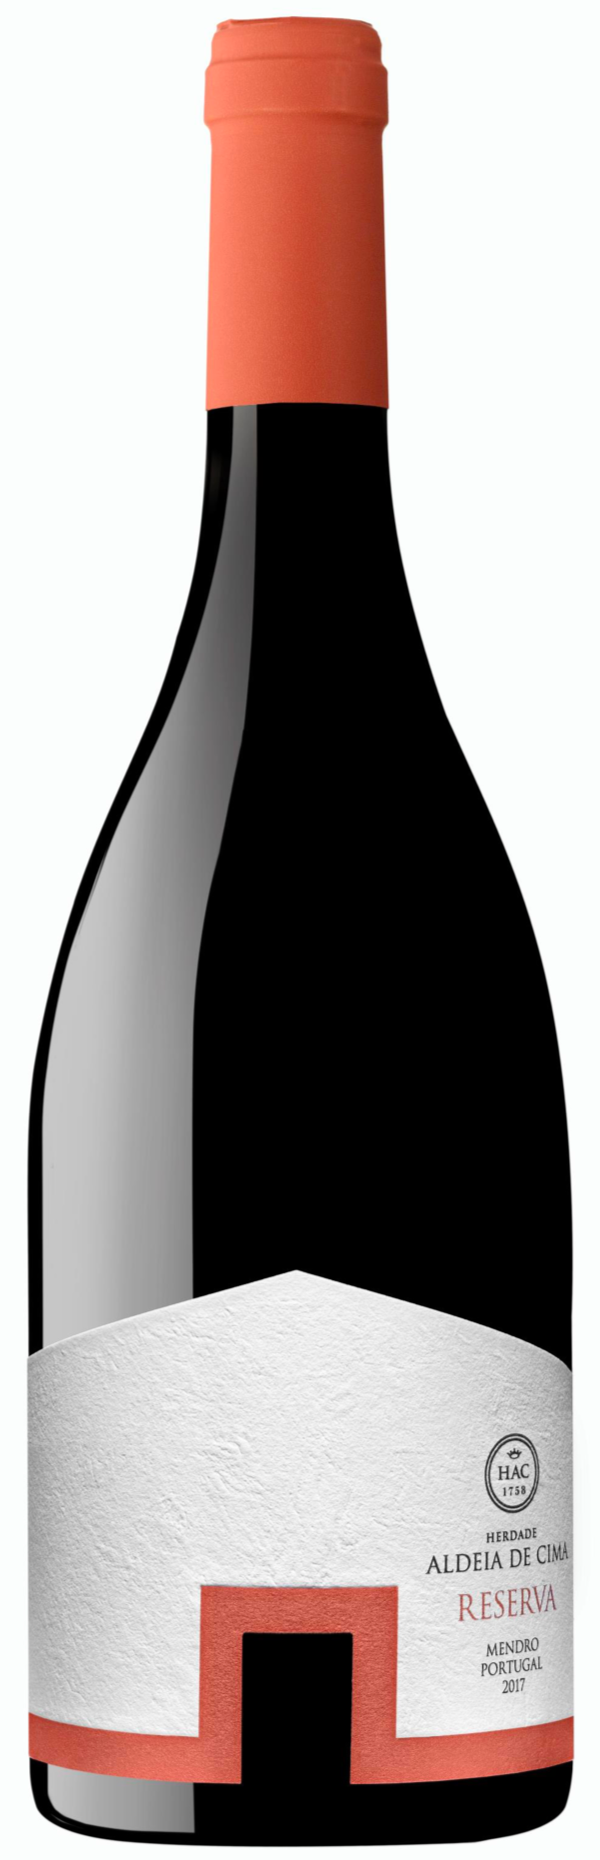 JM43 - Garoando com vinho tinto